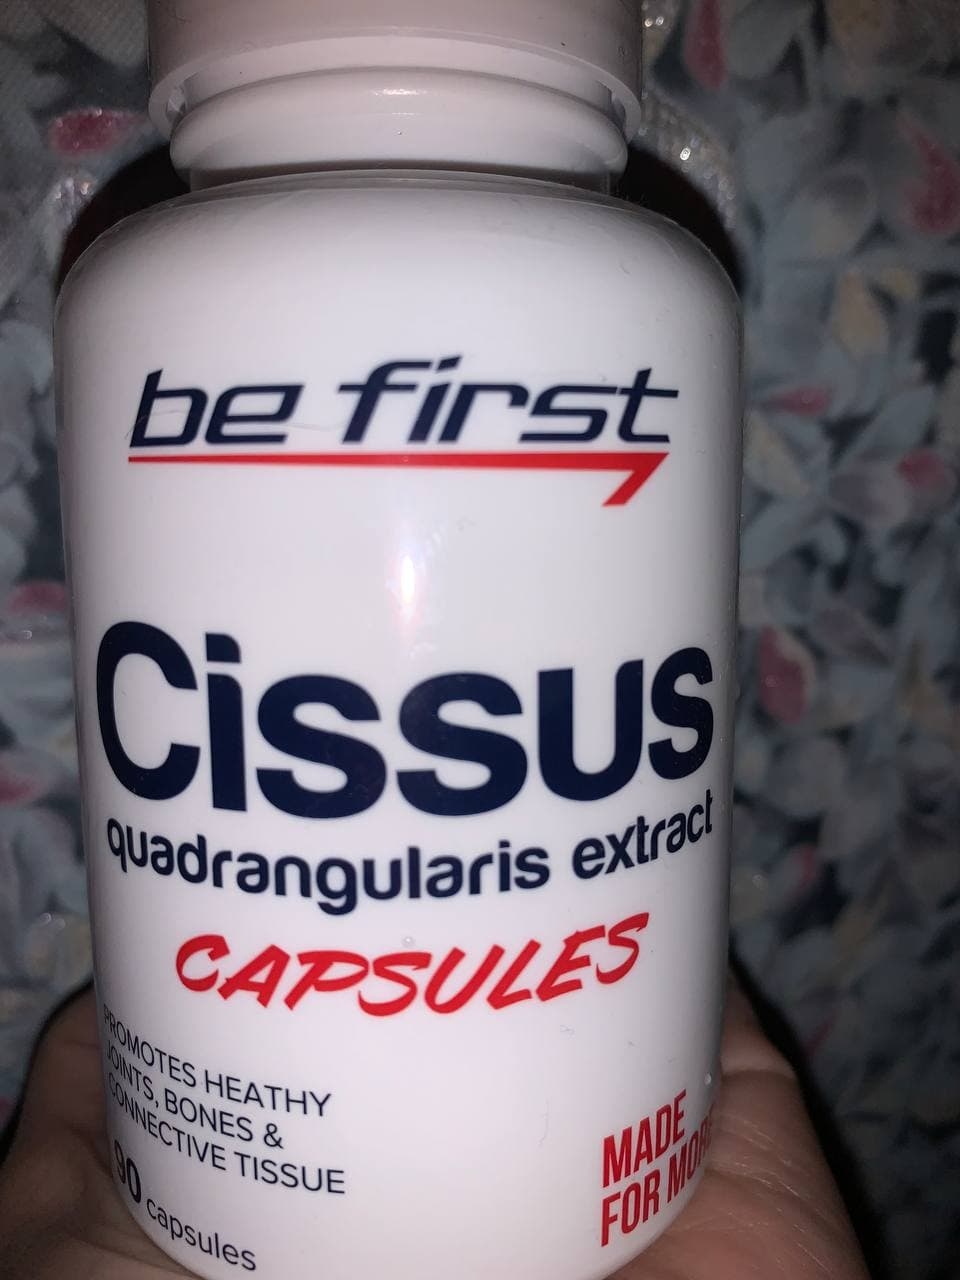 Extract first. Cissus quadrangularis extract Capsules. Cissus quadrangularis Capsule. Капсулы Cissus quadrangularis. Экстракт be first Cissus quadrangularis extract Capsules, 90 капсул.